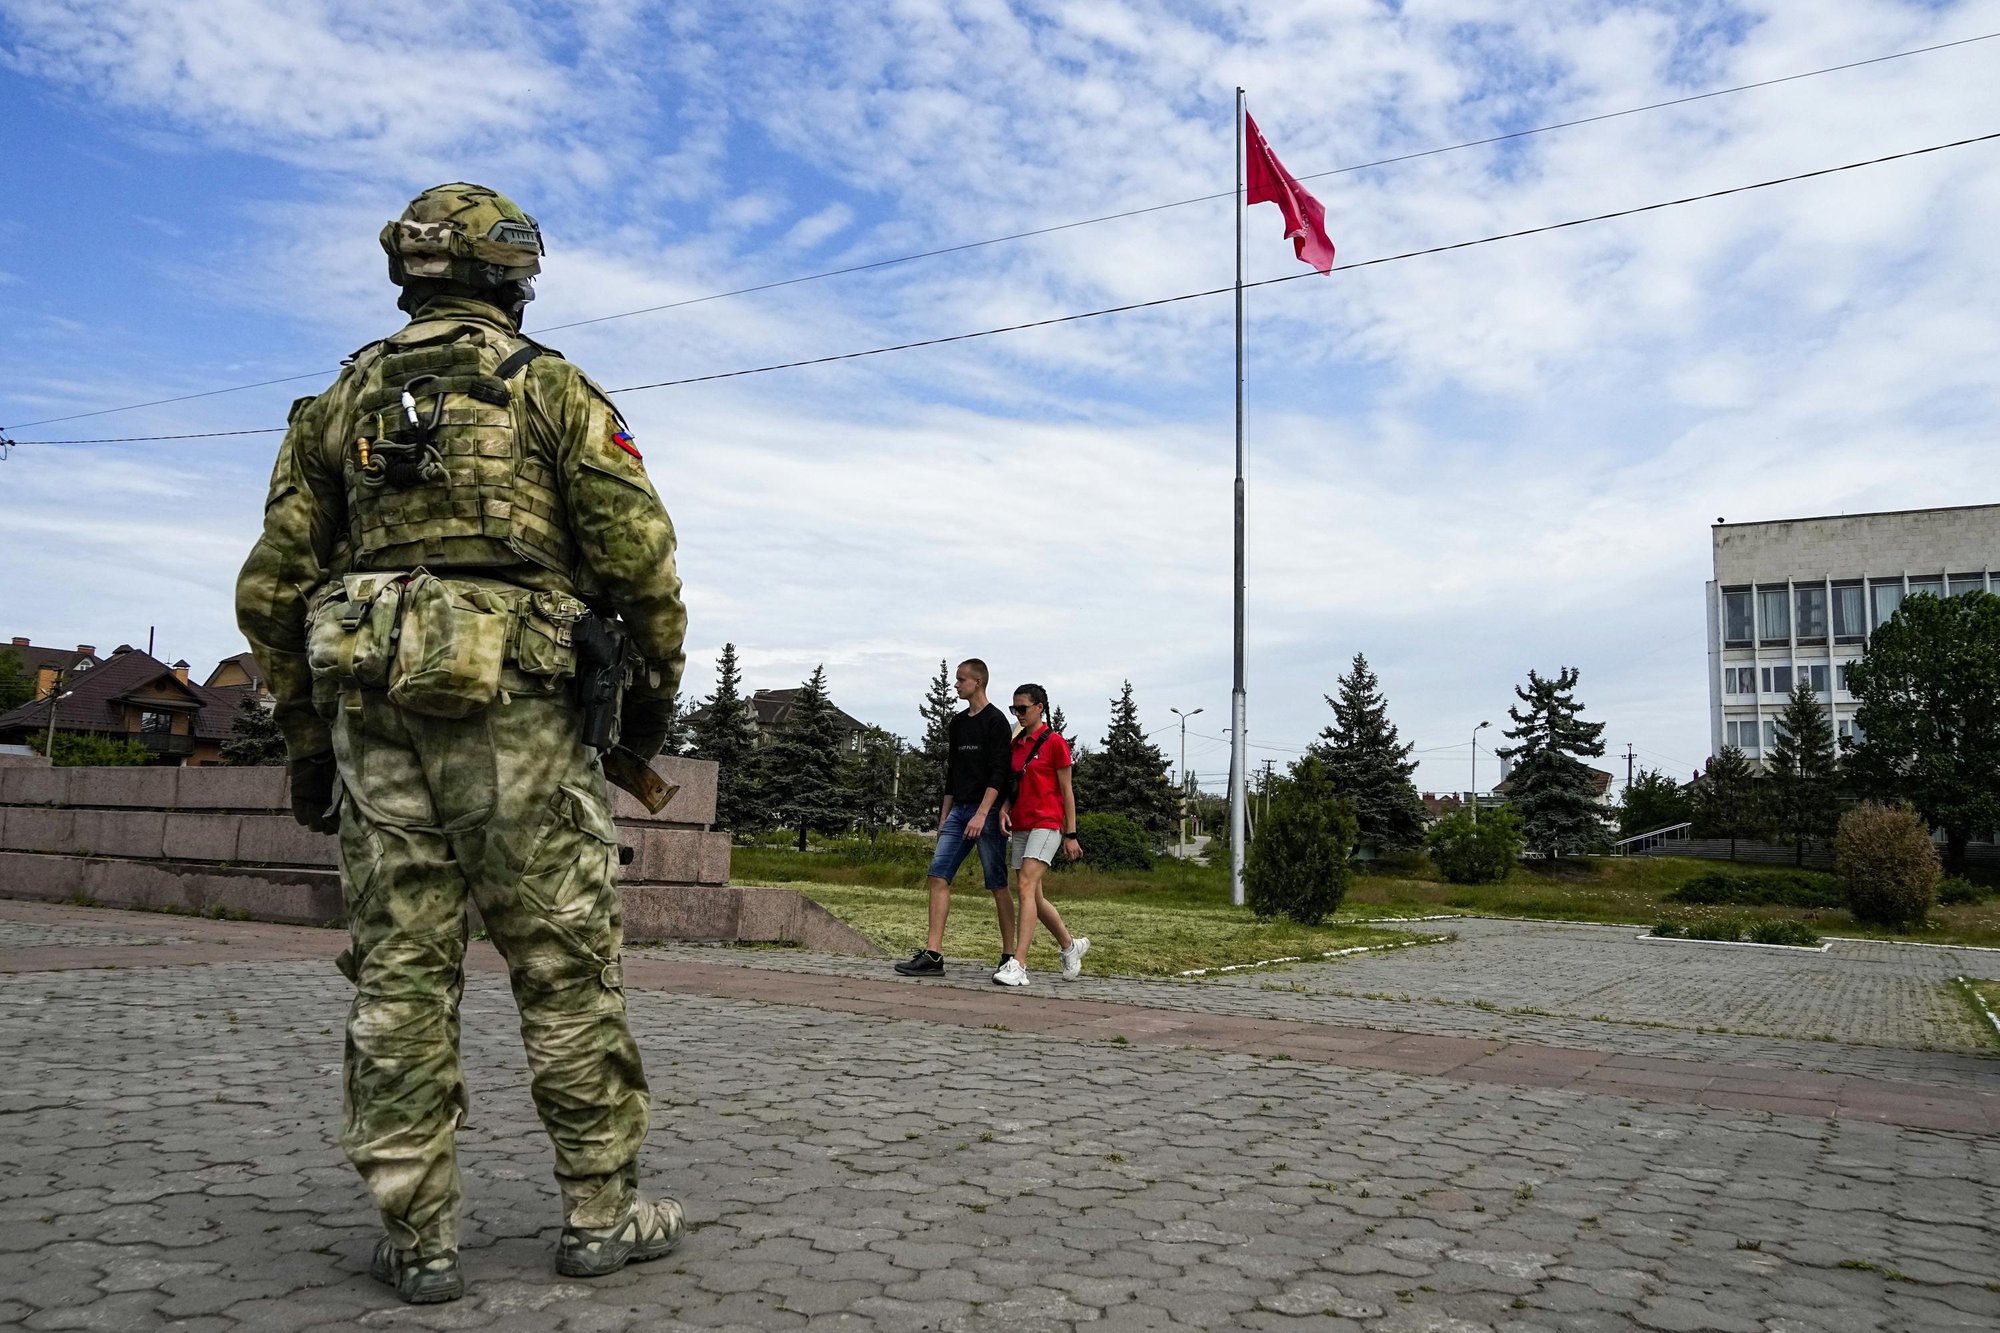 Quân đội Ukraine có thể tiếp cận biên giới Crimea chỉ trong vòng 2 - 4 tháng - Ảnh 6.